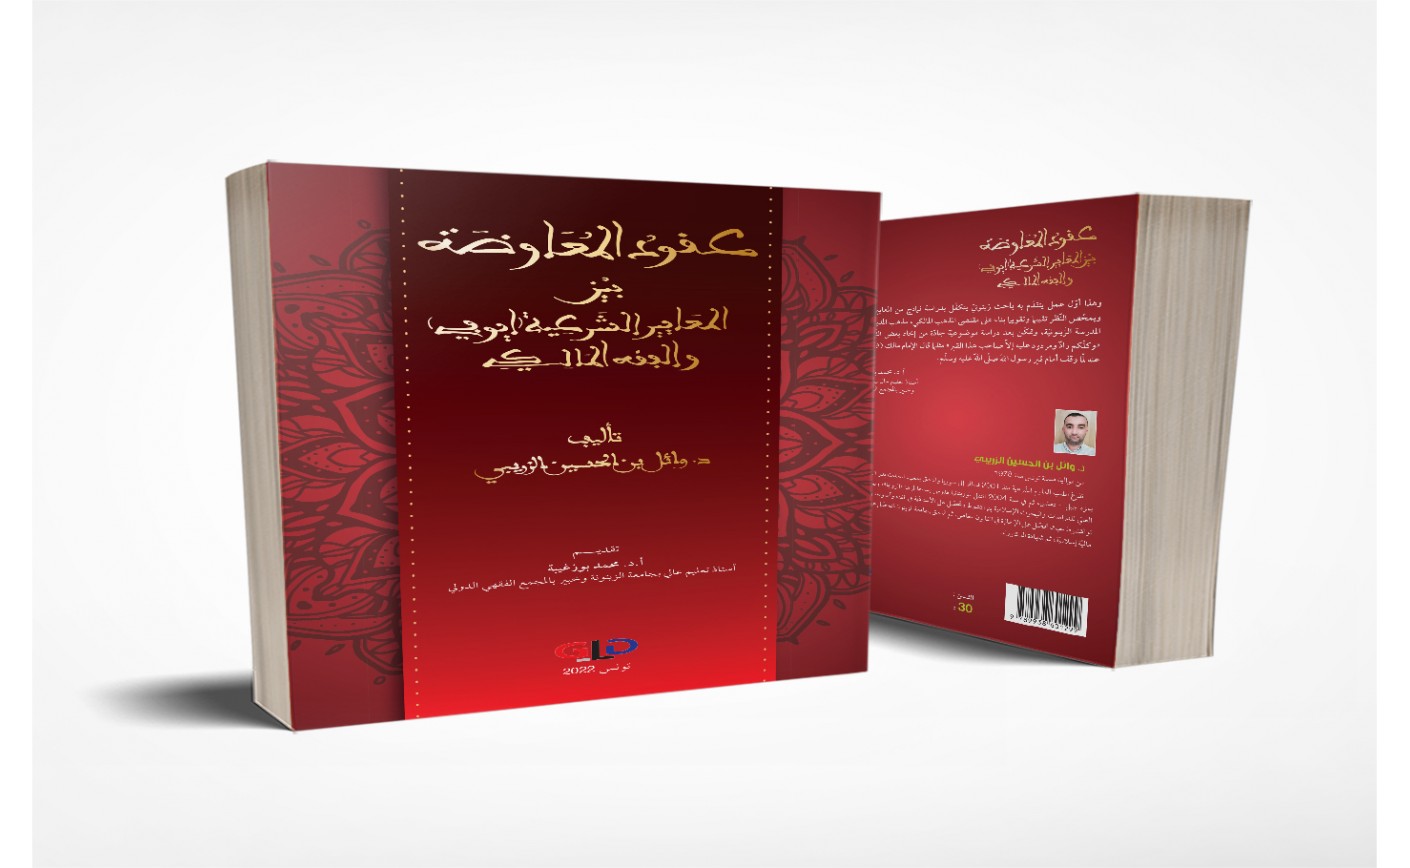 تقديم كتاب عقود المعاوضة بين المعايير الشرعيّة (أيوفي) والفقه المالكي للدكتور وائل بن الحسين الزريبي